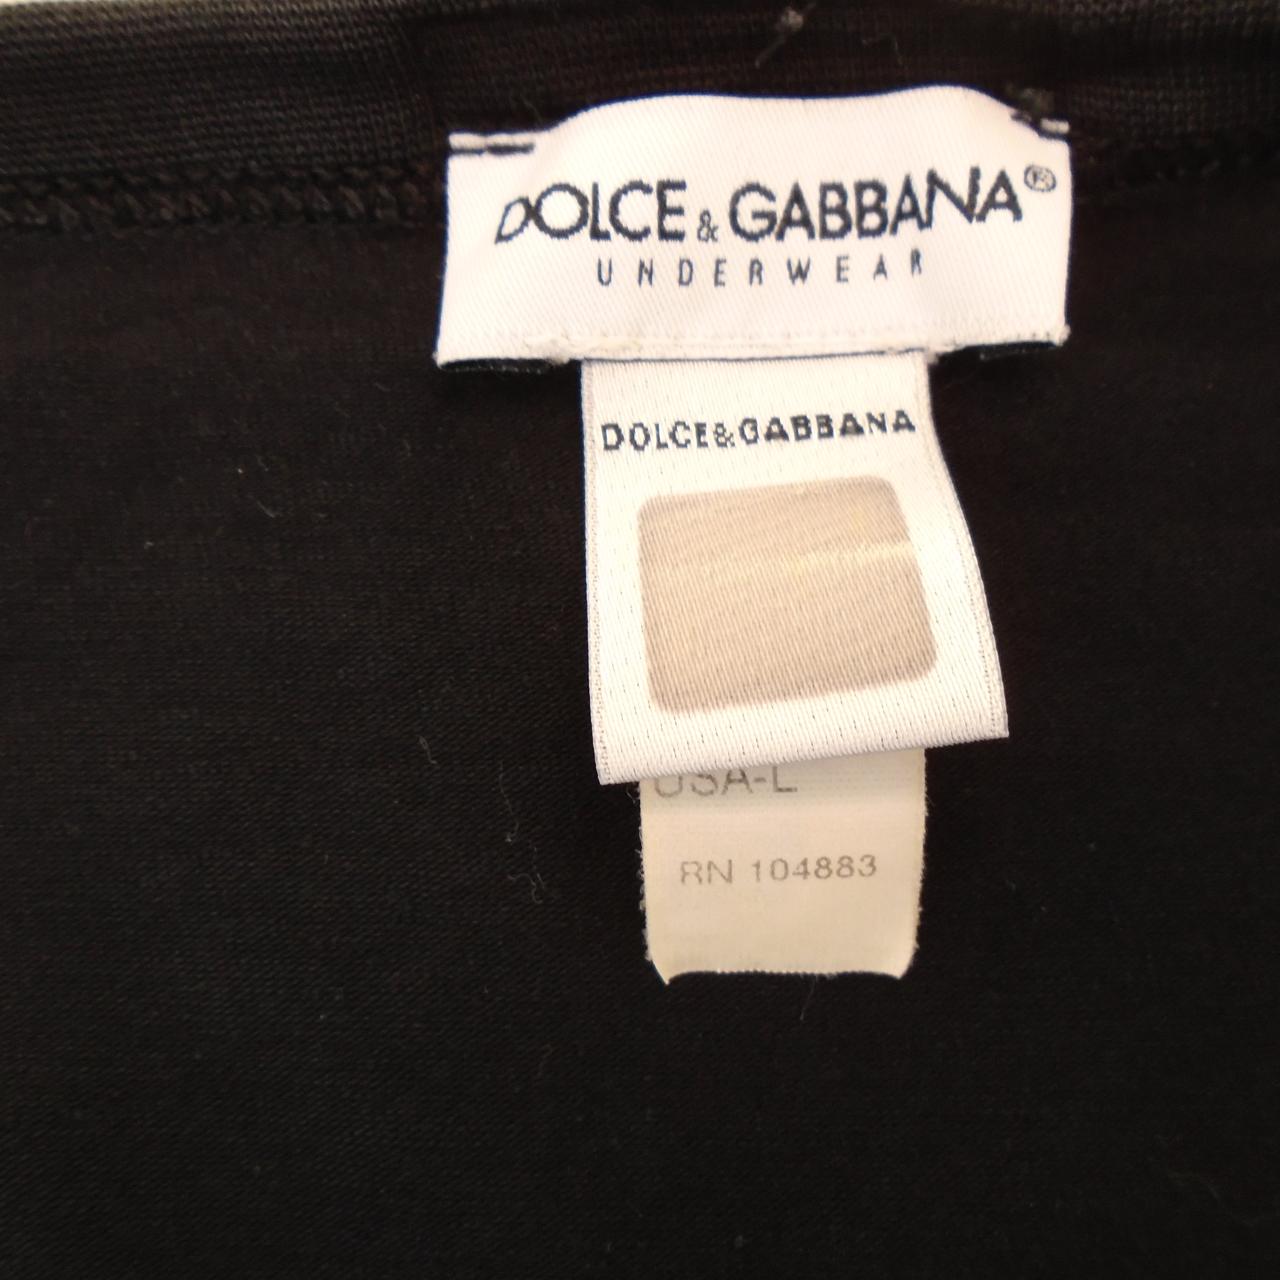 Camiseta de hombre Dolce & Gabbana.  Negro.  SG.  Usó.  Bien